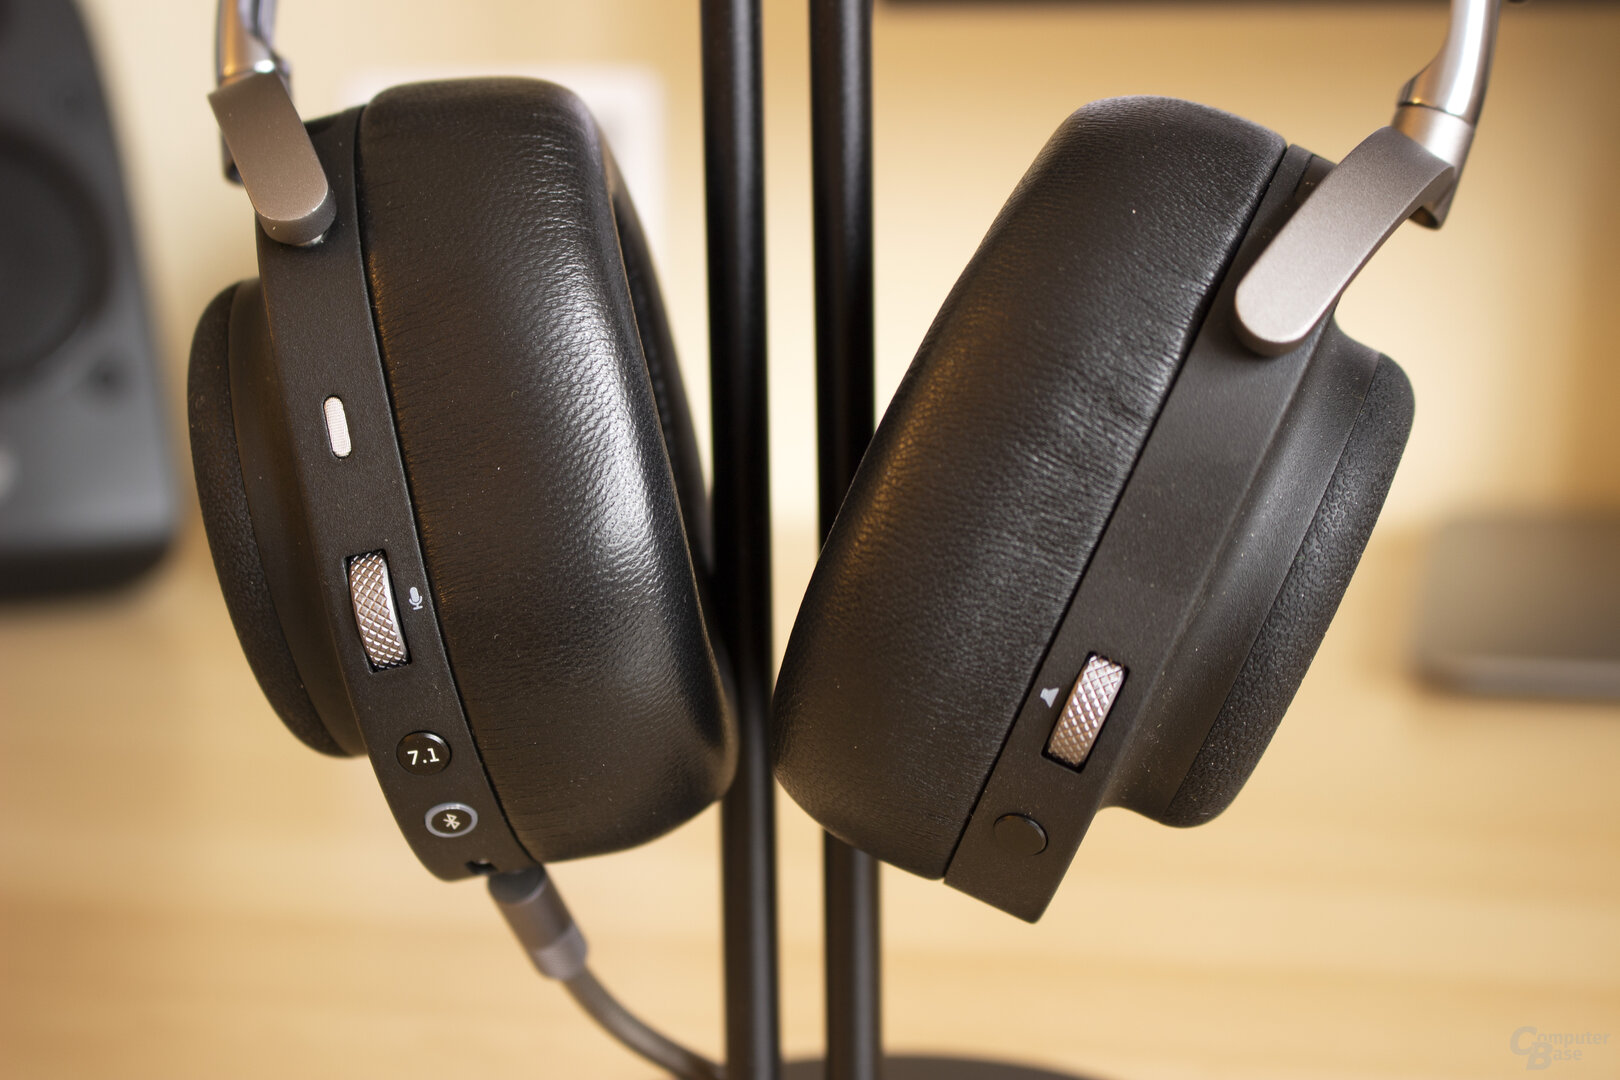 Das MG20 besitzt die wichtigsten Bedienelemente direkt am Headset